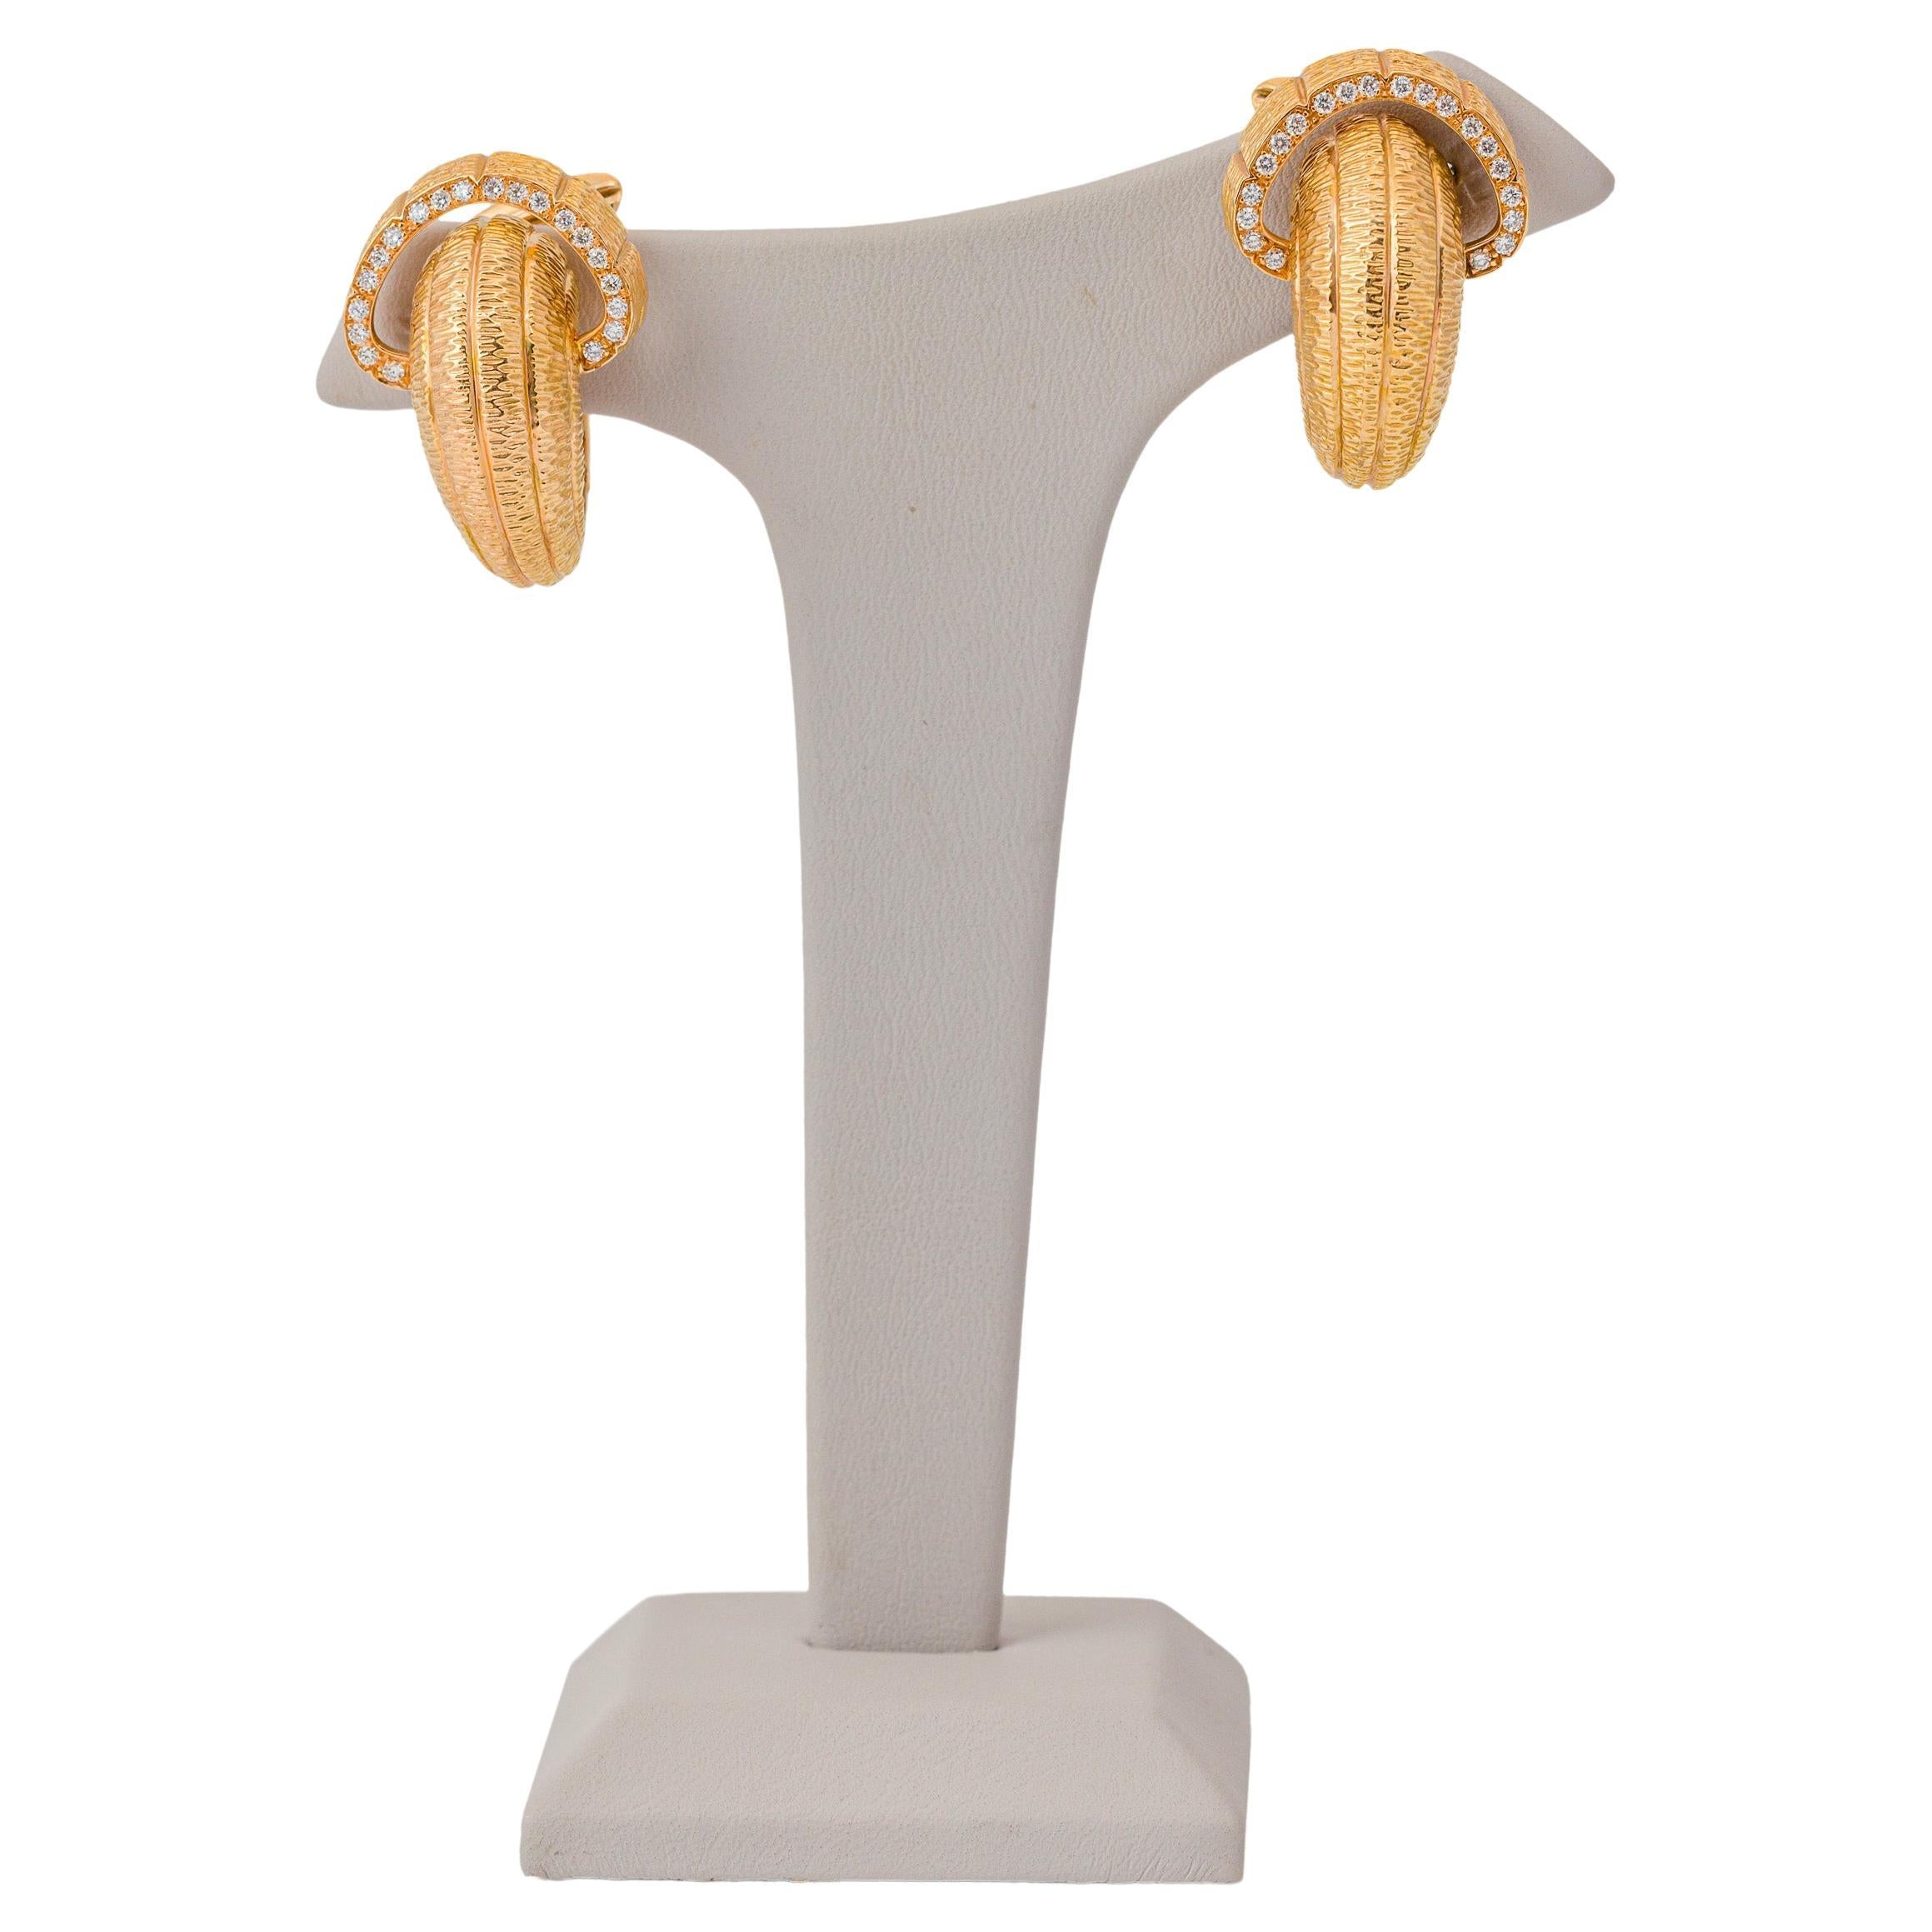 "Costis" Schneckenmuschel-Ohrringe aus 18 Karat Roségold mit Gravur - VVS 0,59 Karat Diamanten